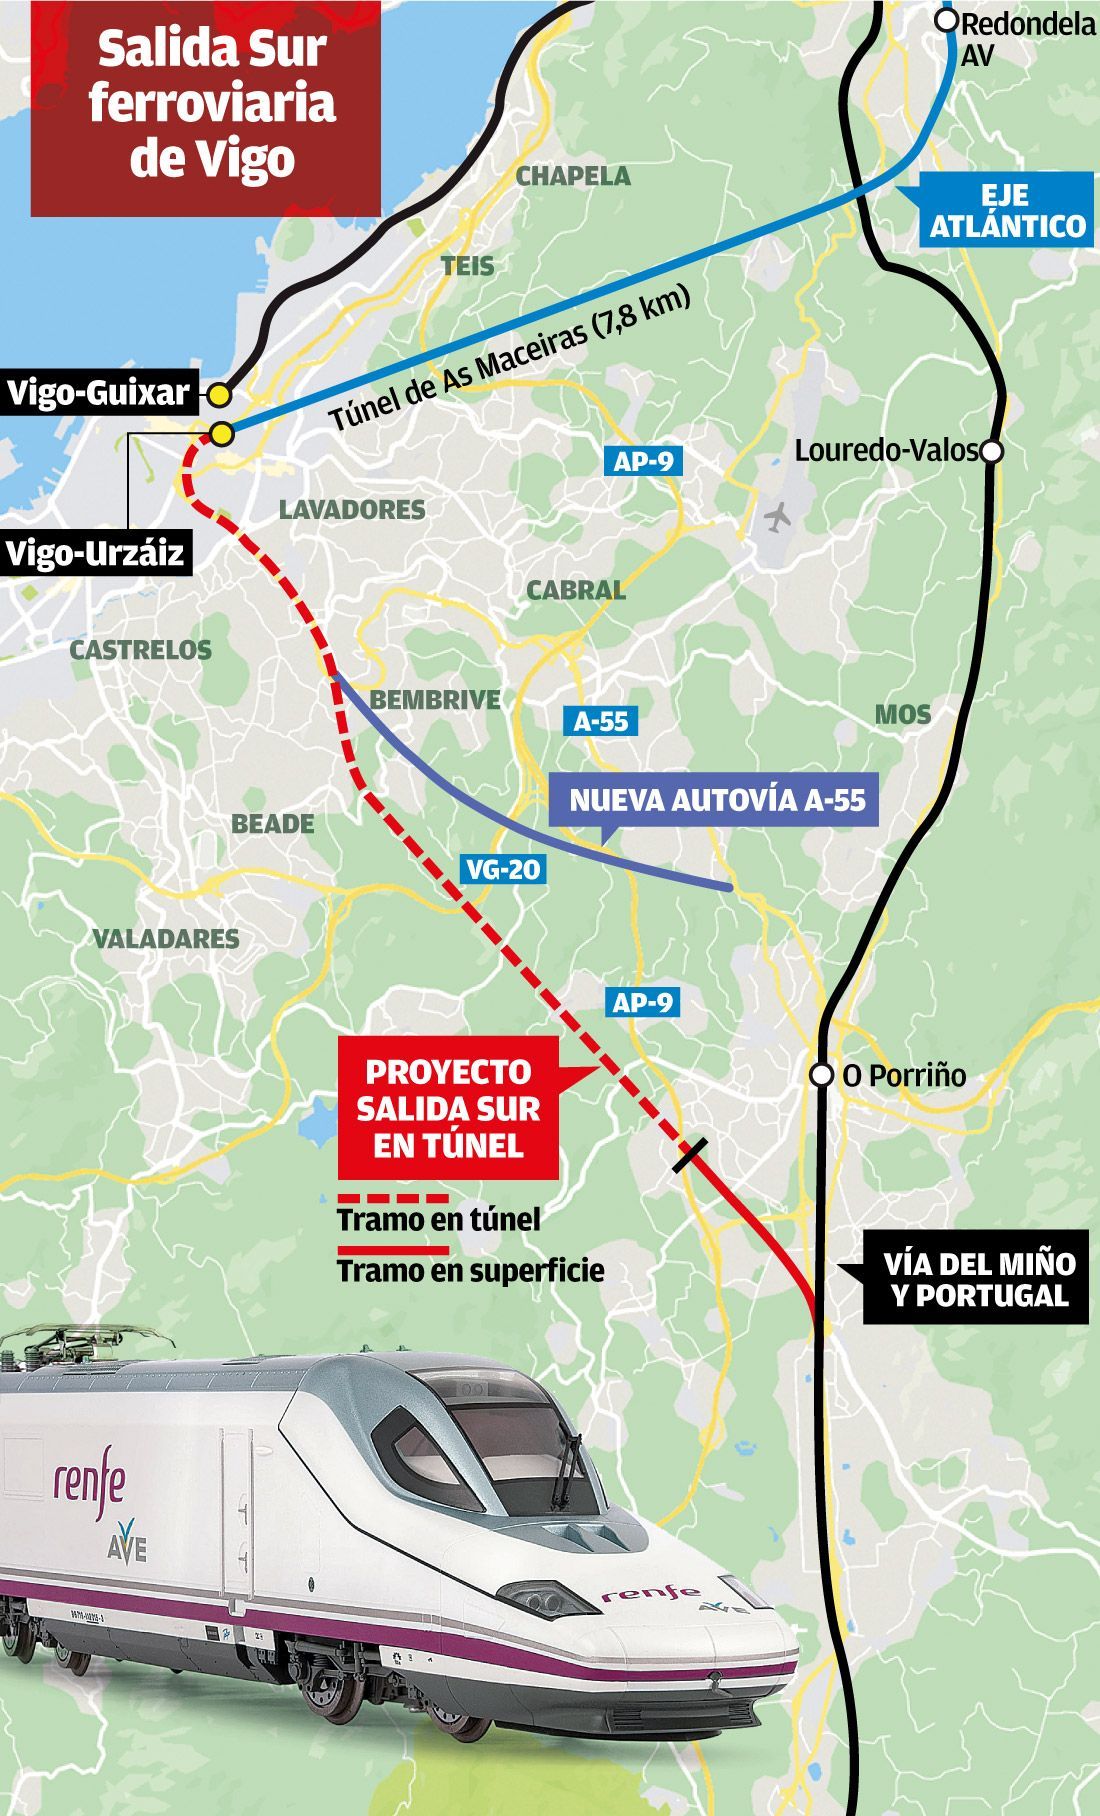 Futura salida sur ferroviaria de Vigo en túnel hasta Porriño